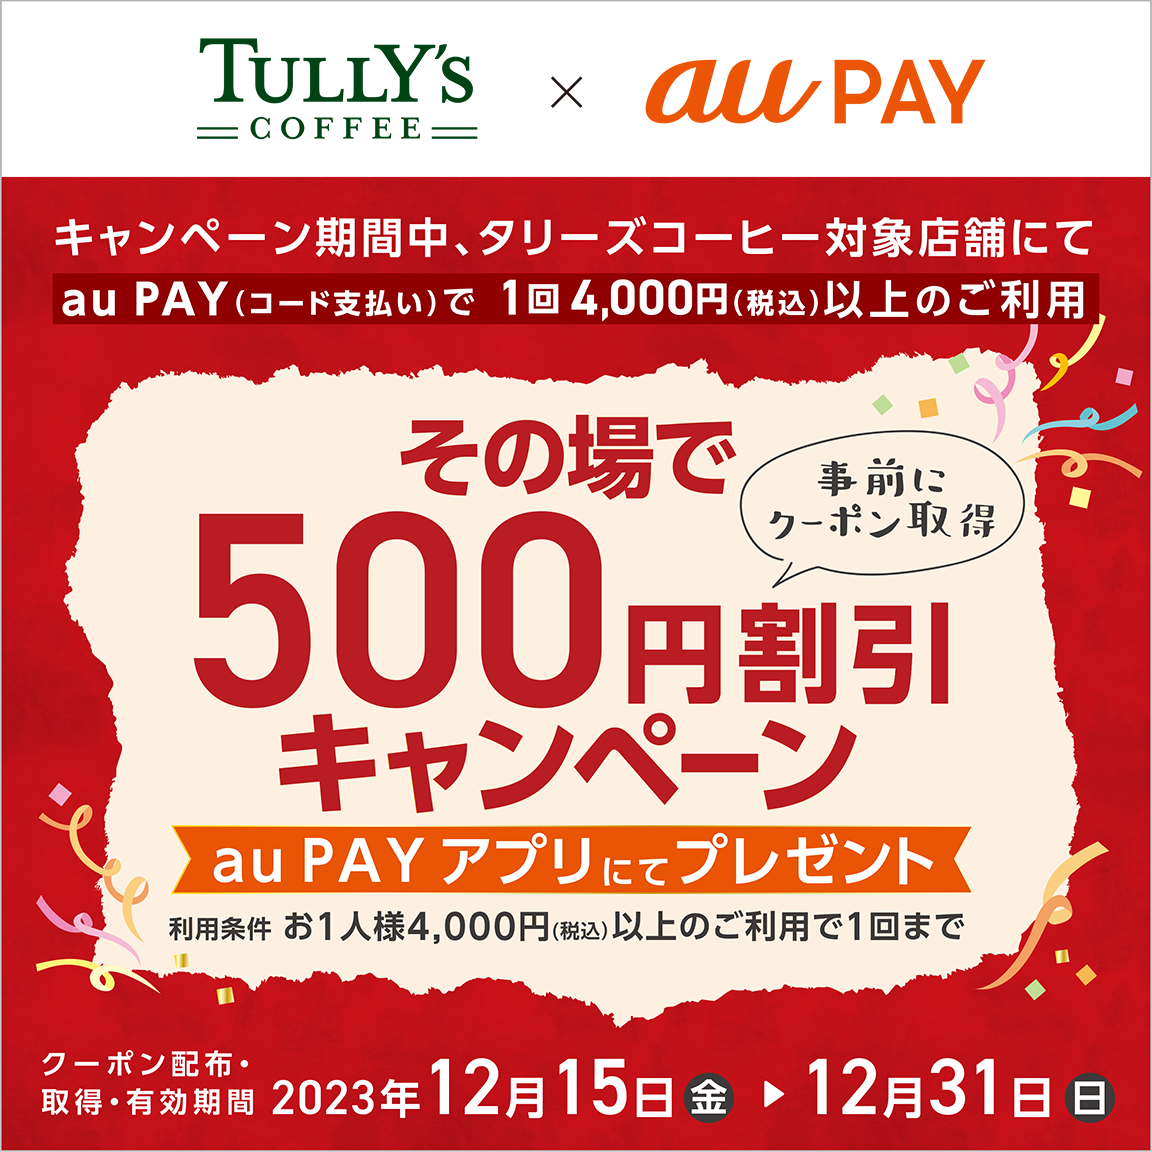 タリーズコーヒ × au PAY